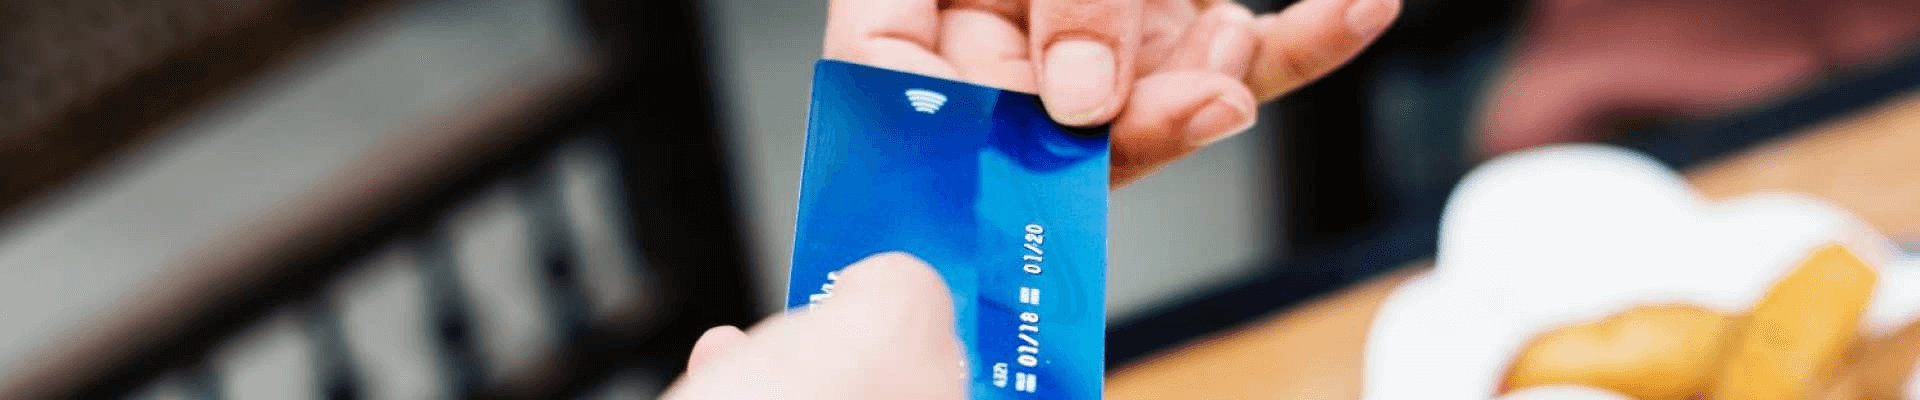 Просроченными банковскими картами можно пользоваться до июля 2020 года